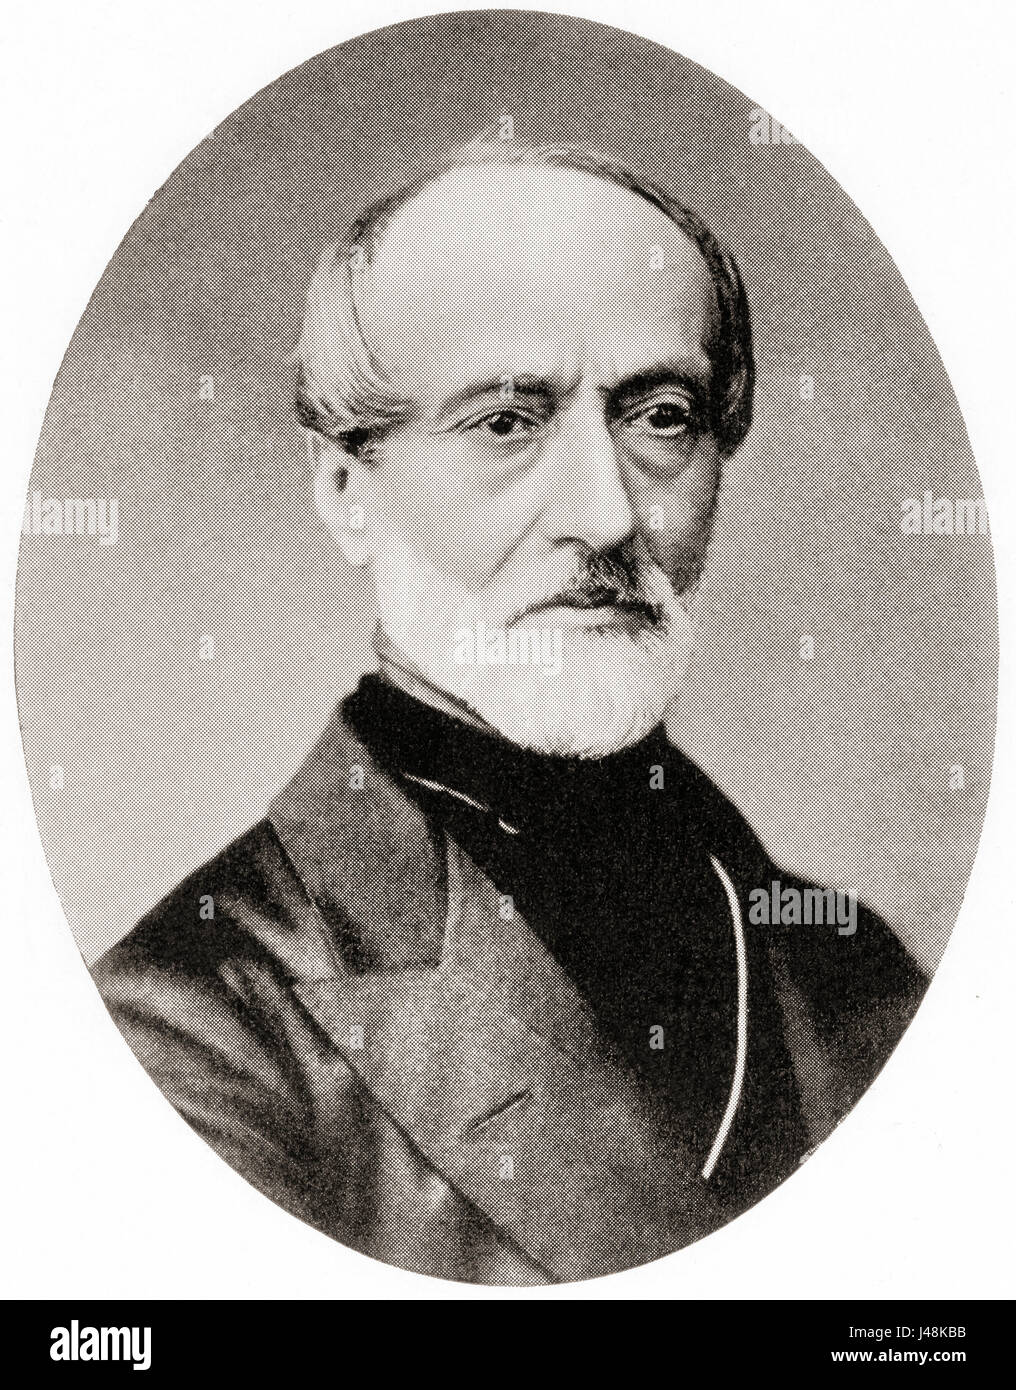 Giuseppe Mazzini 1805-1872.  Italienischer Politiker, Journalist und Aktivist für die Einigung Italiens.  Hutchinson Geschichte der Nationen veröffentlichte 1915. Stockfoto